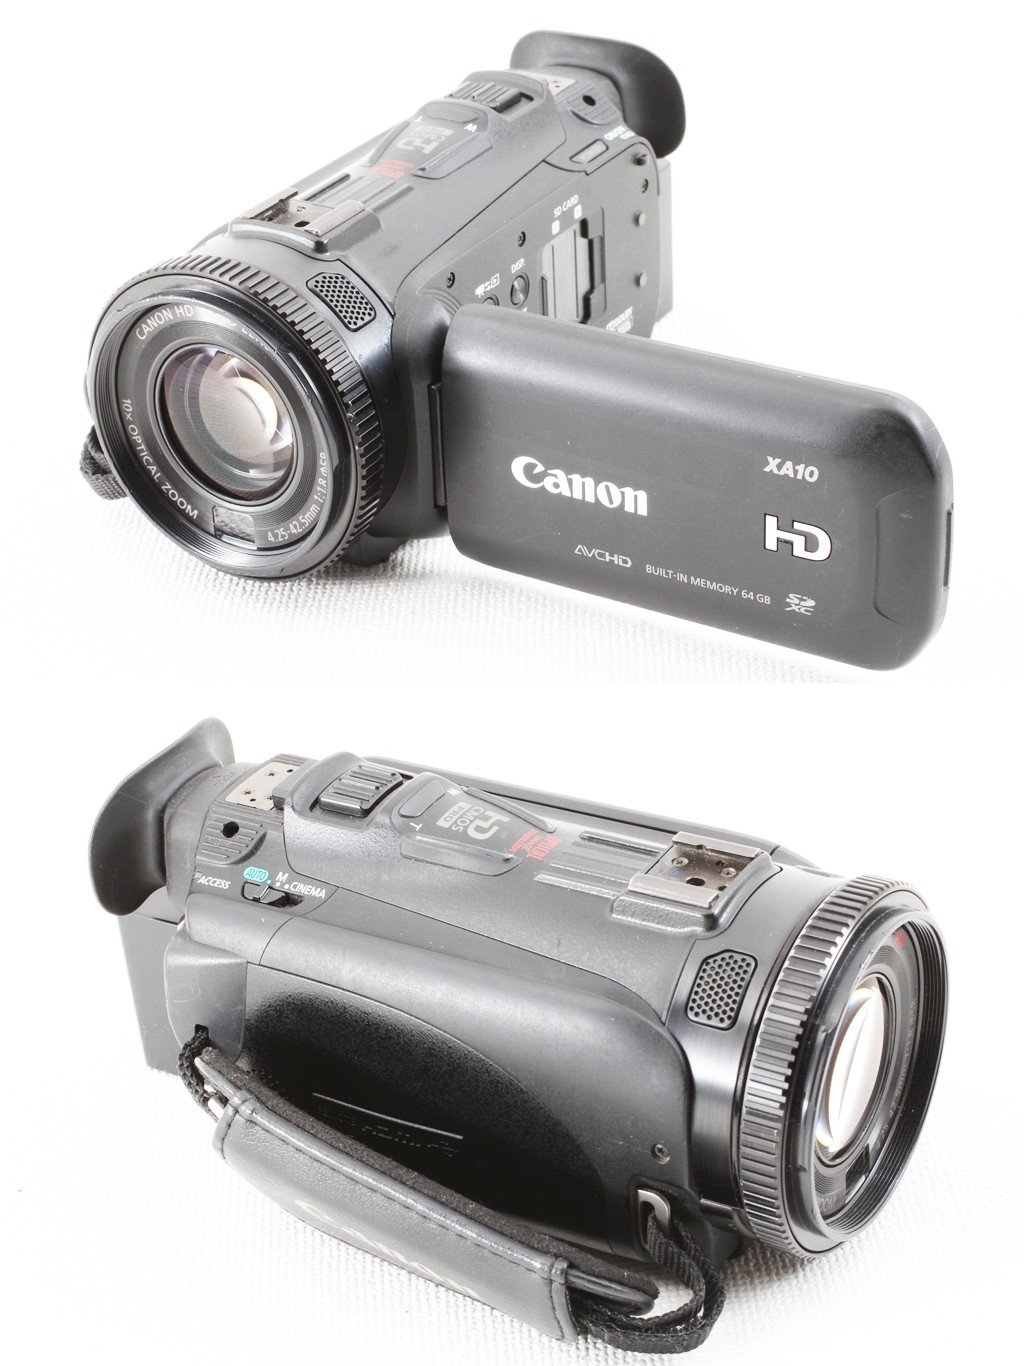 ハンディカメラ ivis HF R31 シルバー - カメラ